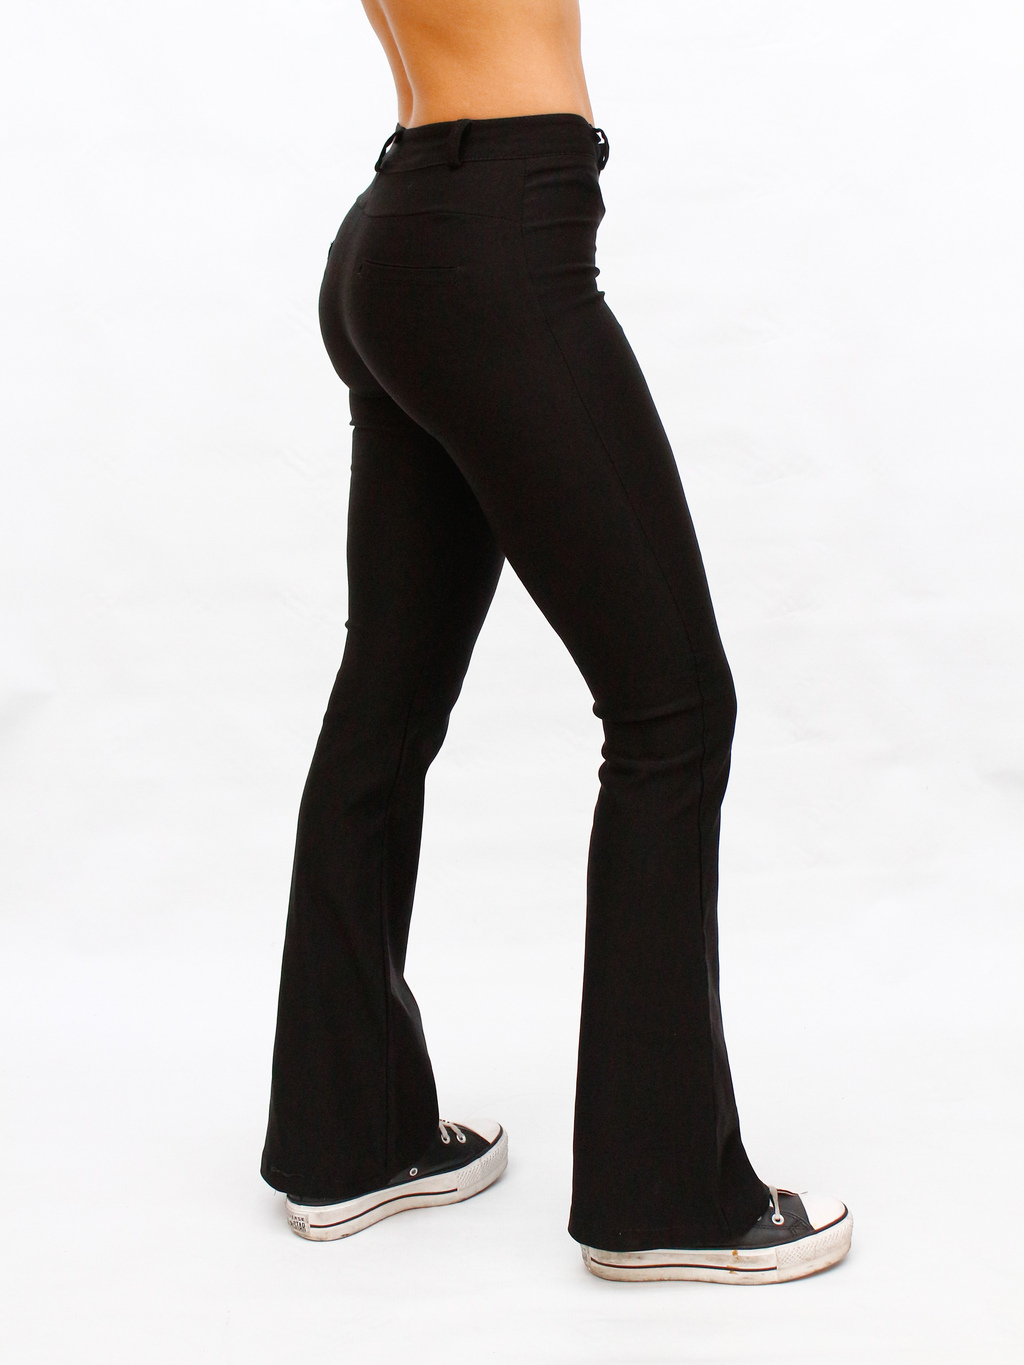 Pantalon Oxford Negro - Comprar en Odas Moda